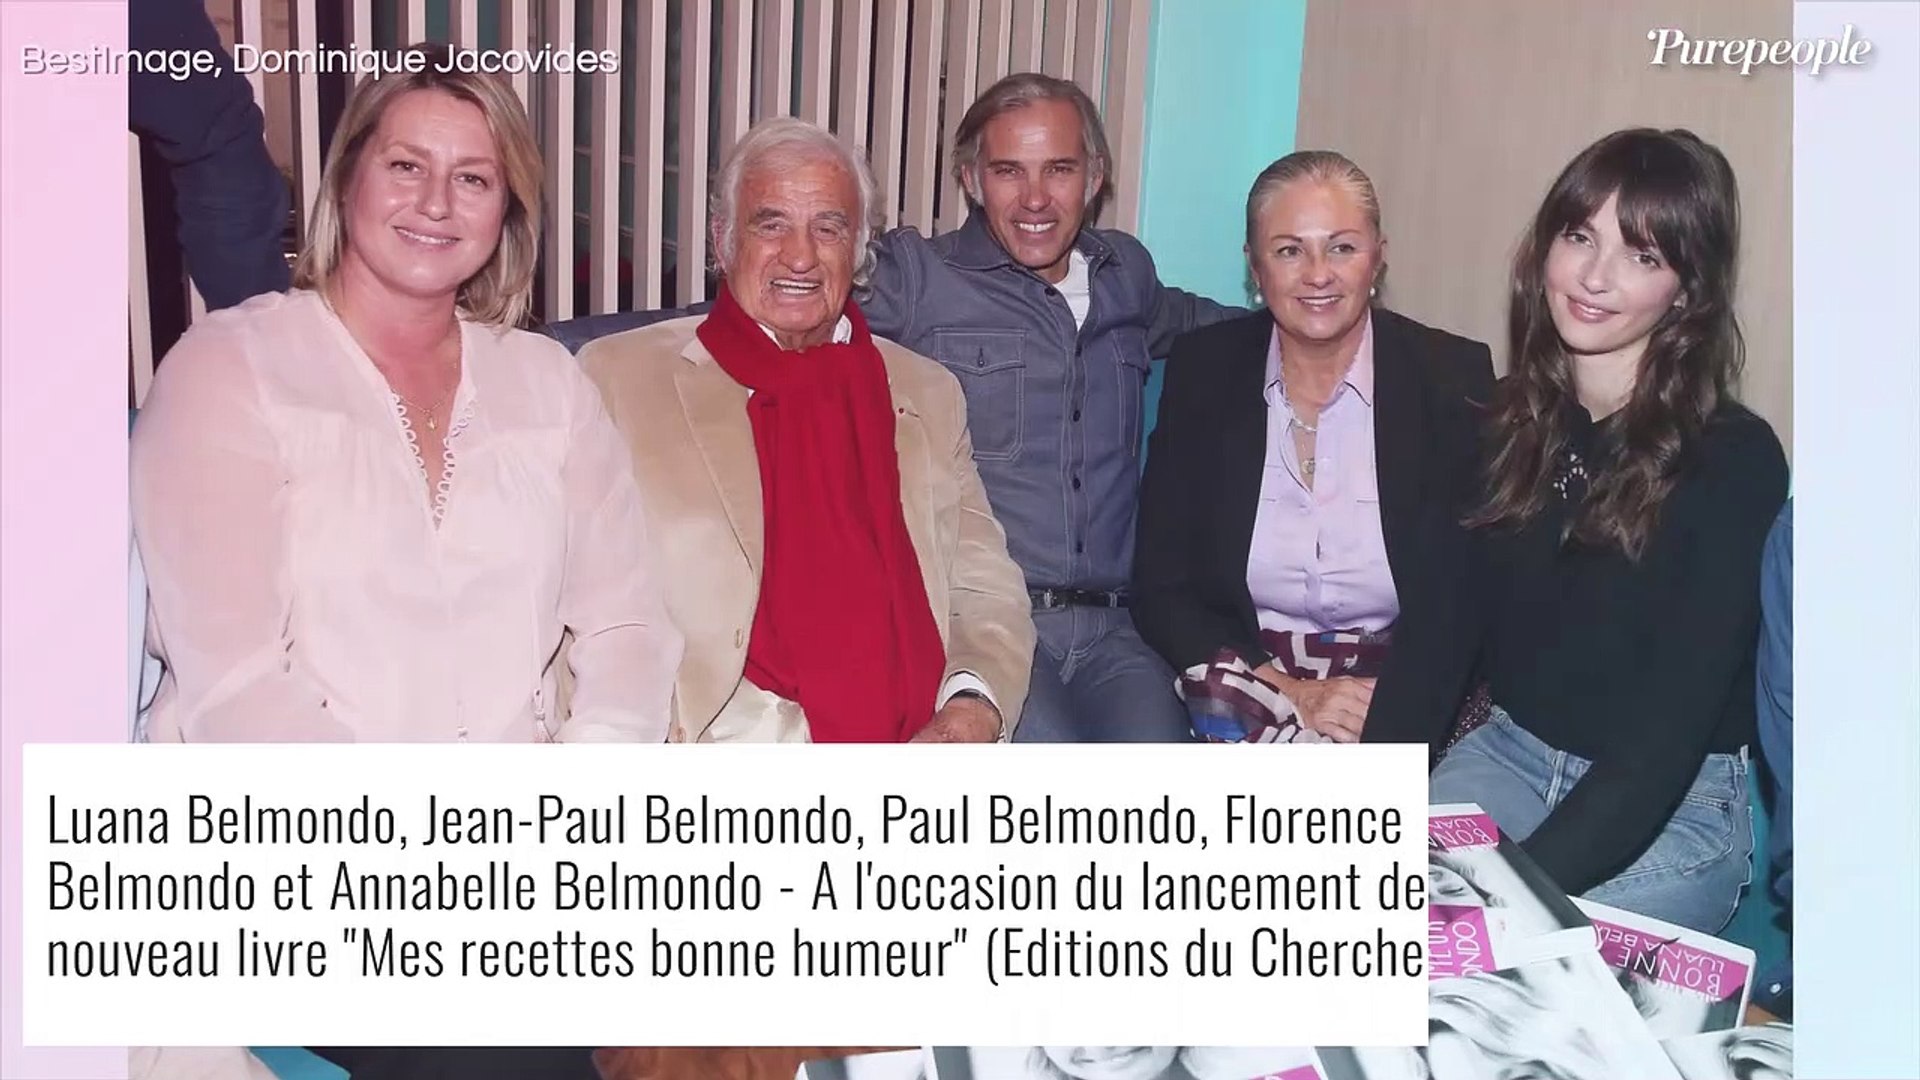 Mort de Jean-Paul Belmondo : son ex-femme Natty se souvient de leurs 20 ans  d'amour, photo touchante - Vidéo Dailymotion